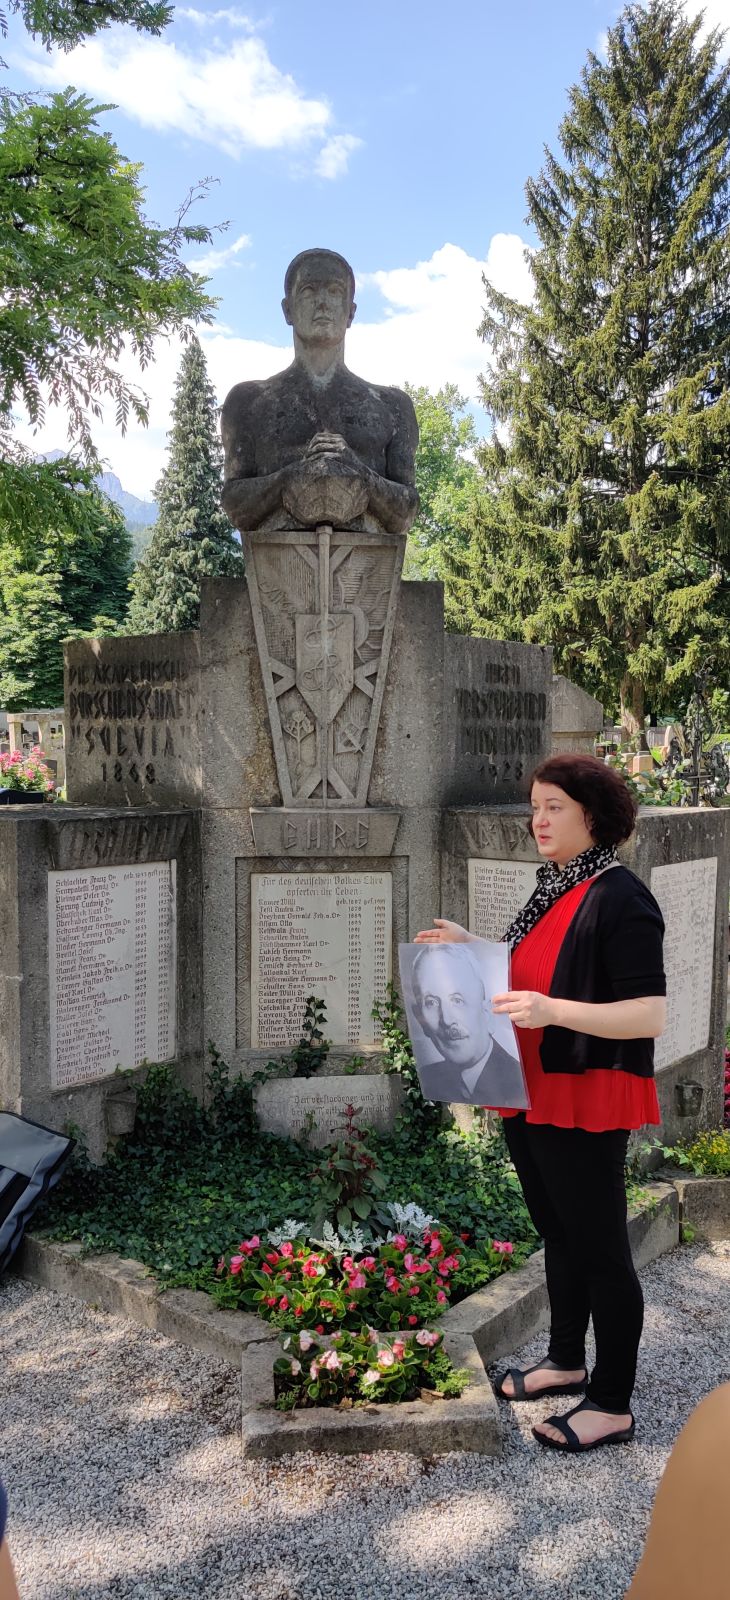 Exkursion zum Jüdischen Friedhof | BRG Wörgl